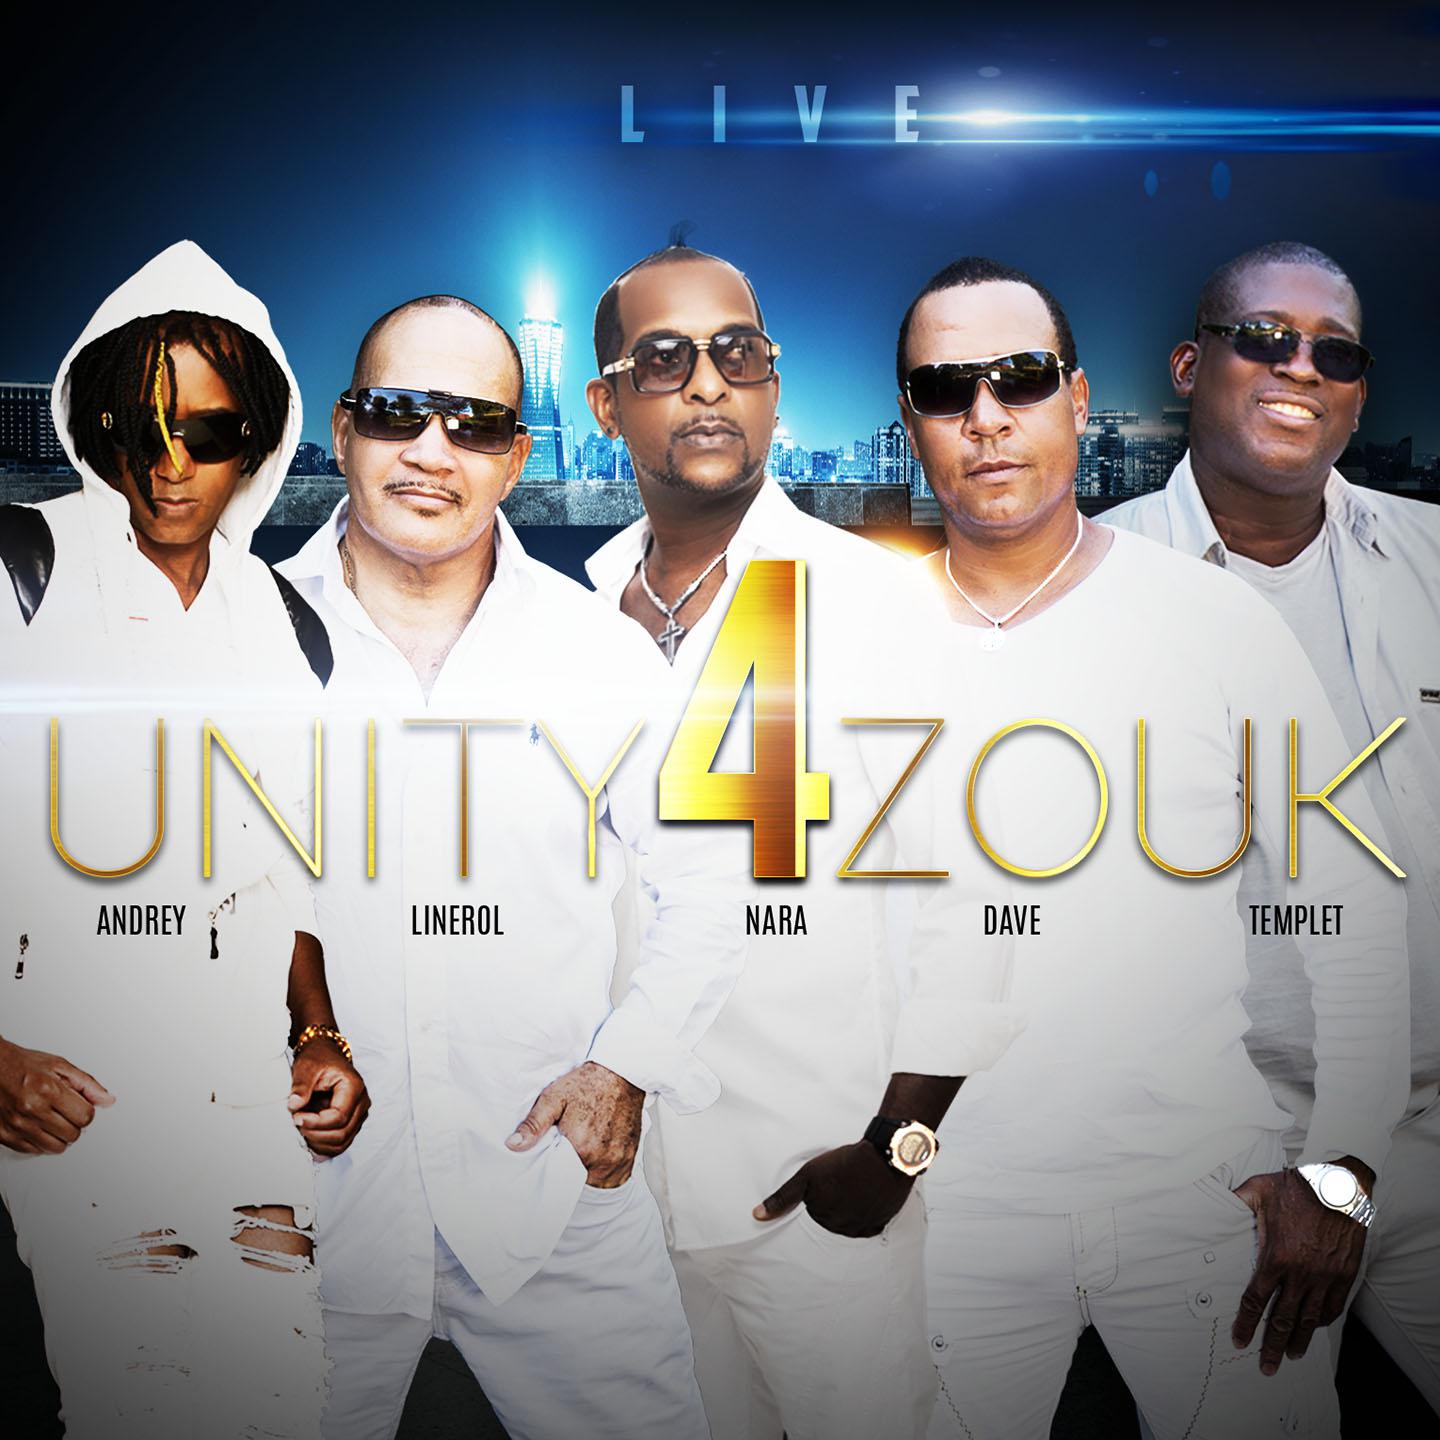 Unity 4 Zouk - Pou l'éternité (Live)